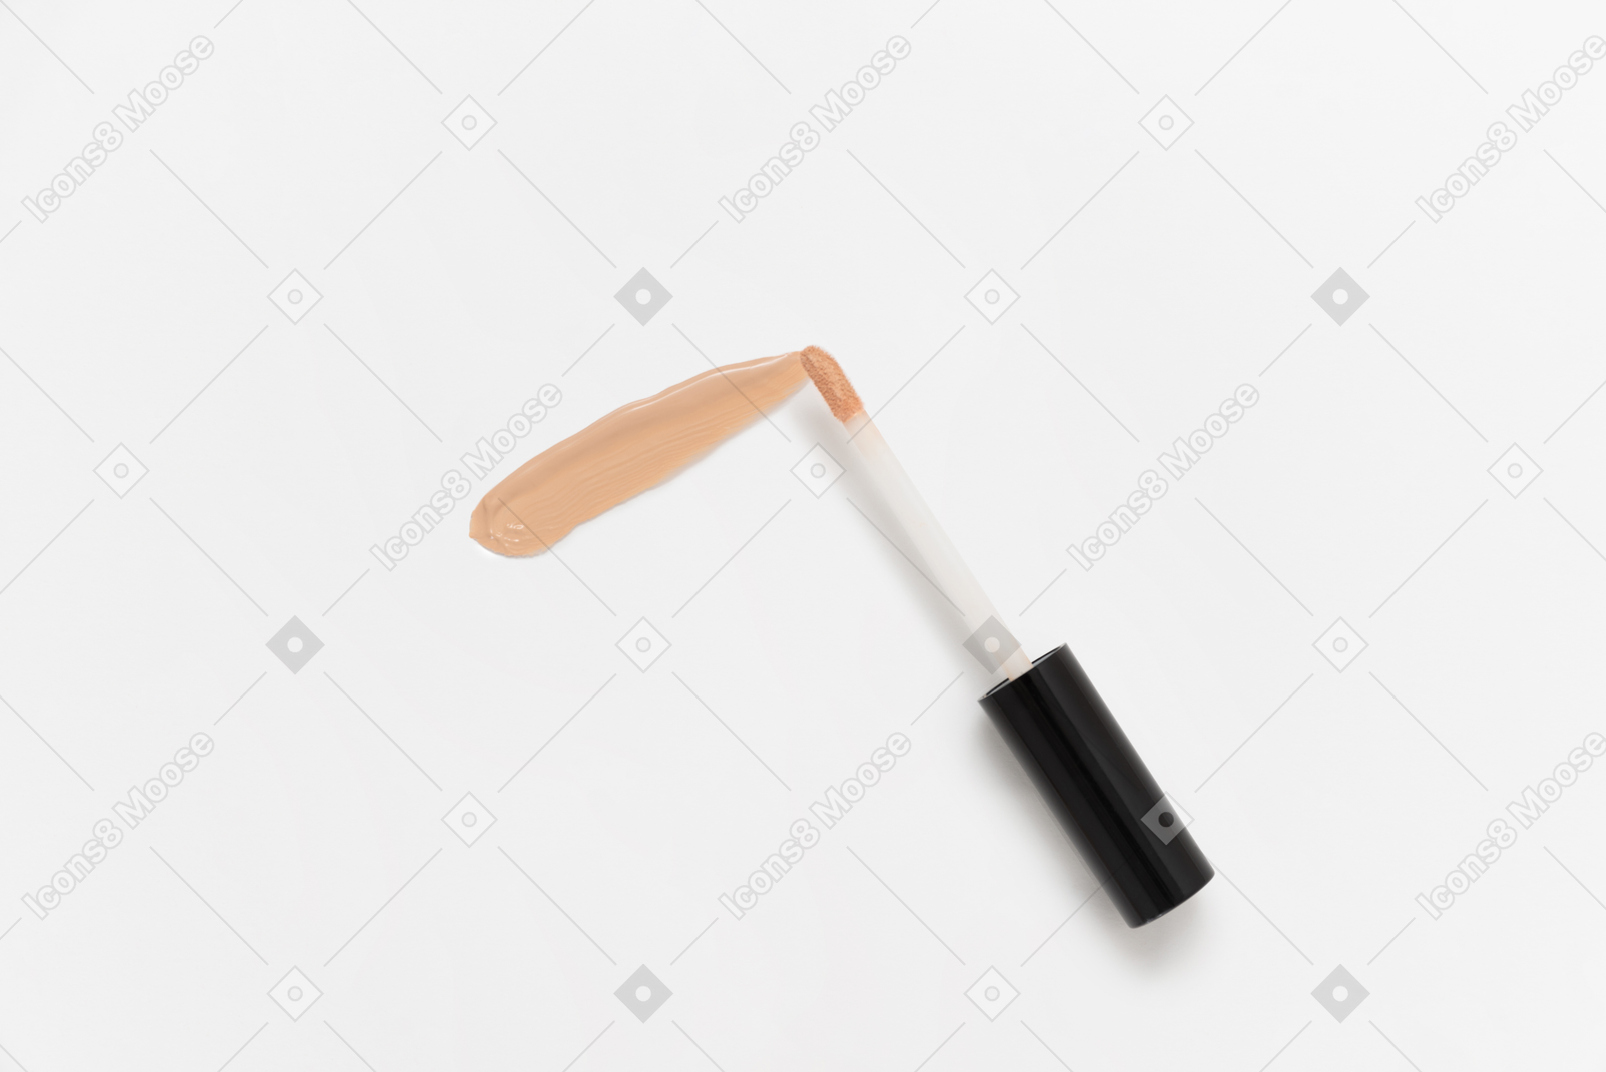 Tonal foundation brush on white background